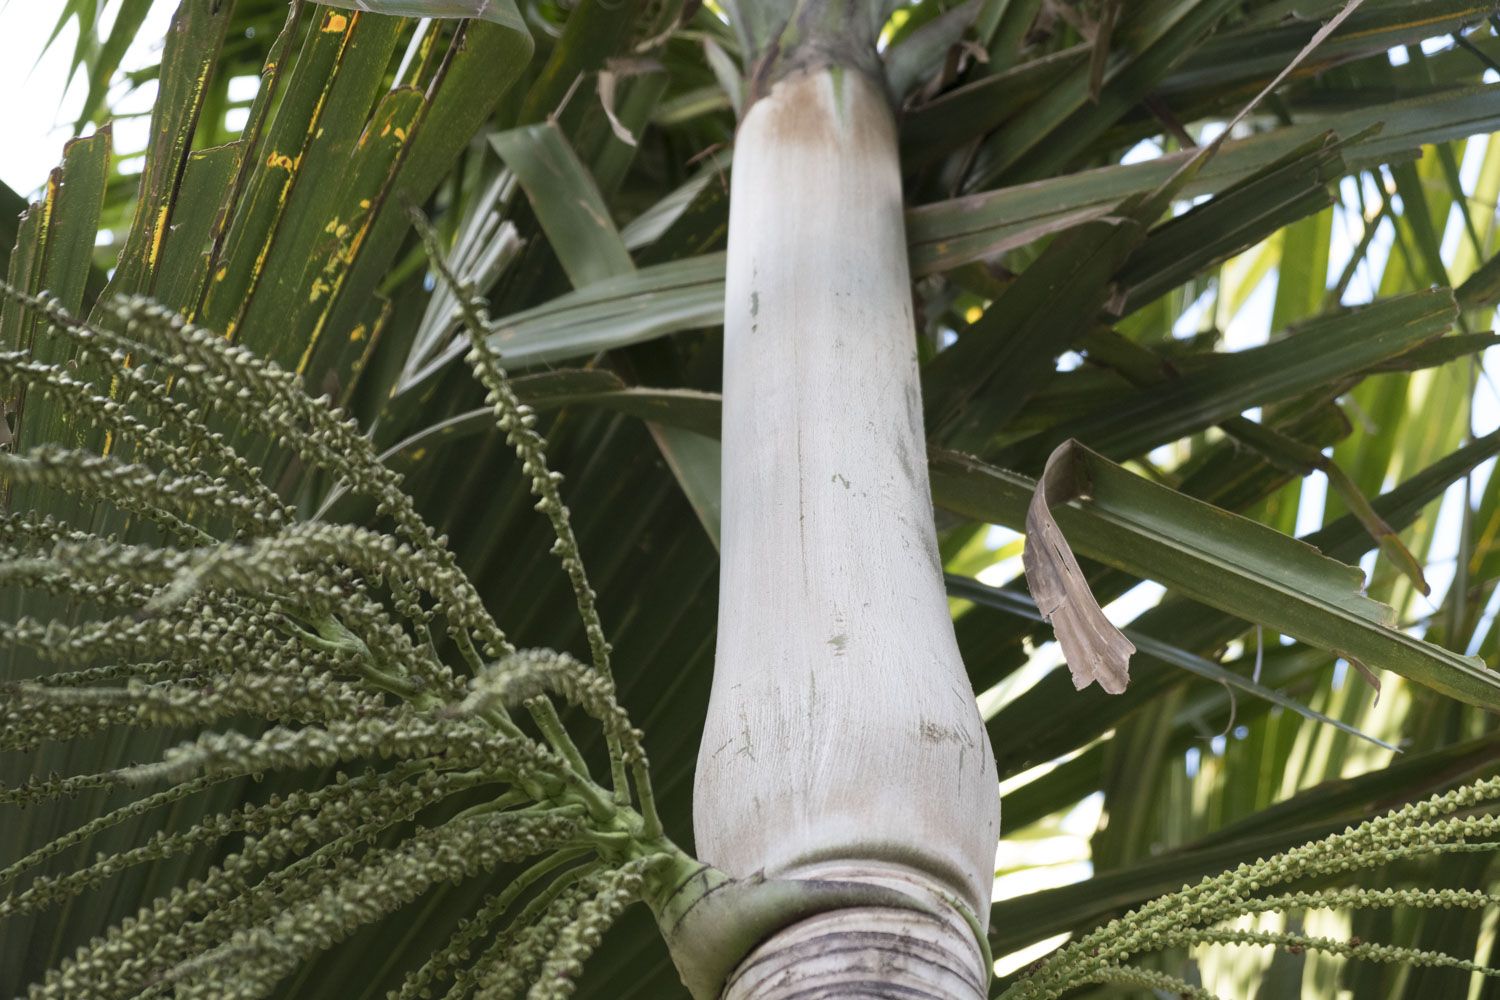 Le cœur du palmiste blanc, une espèce de palmier emblématique de La Réunion est très prisé pour ses qualités gustatives. Il est très utilisé dans la cuisine créole. De ce fait, cet arbre était la proie des braconniers qui l’abattaient pour vendre son cœur. De nombreux restaurants ont été contraints de mettre la clef sous la porte pour avoir acheté des cœurs de palmier à ces braconniers. 